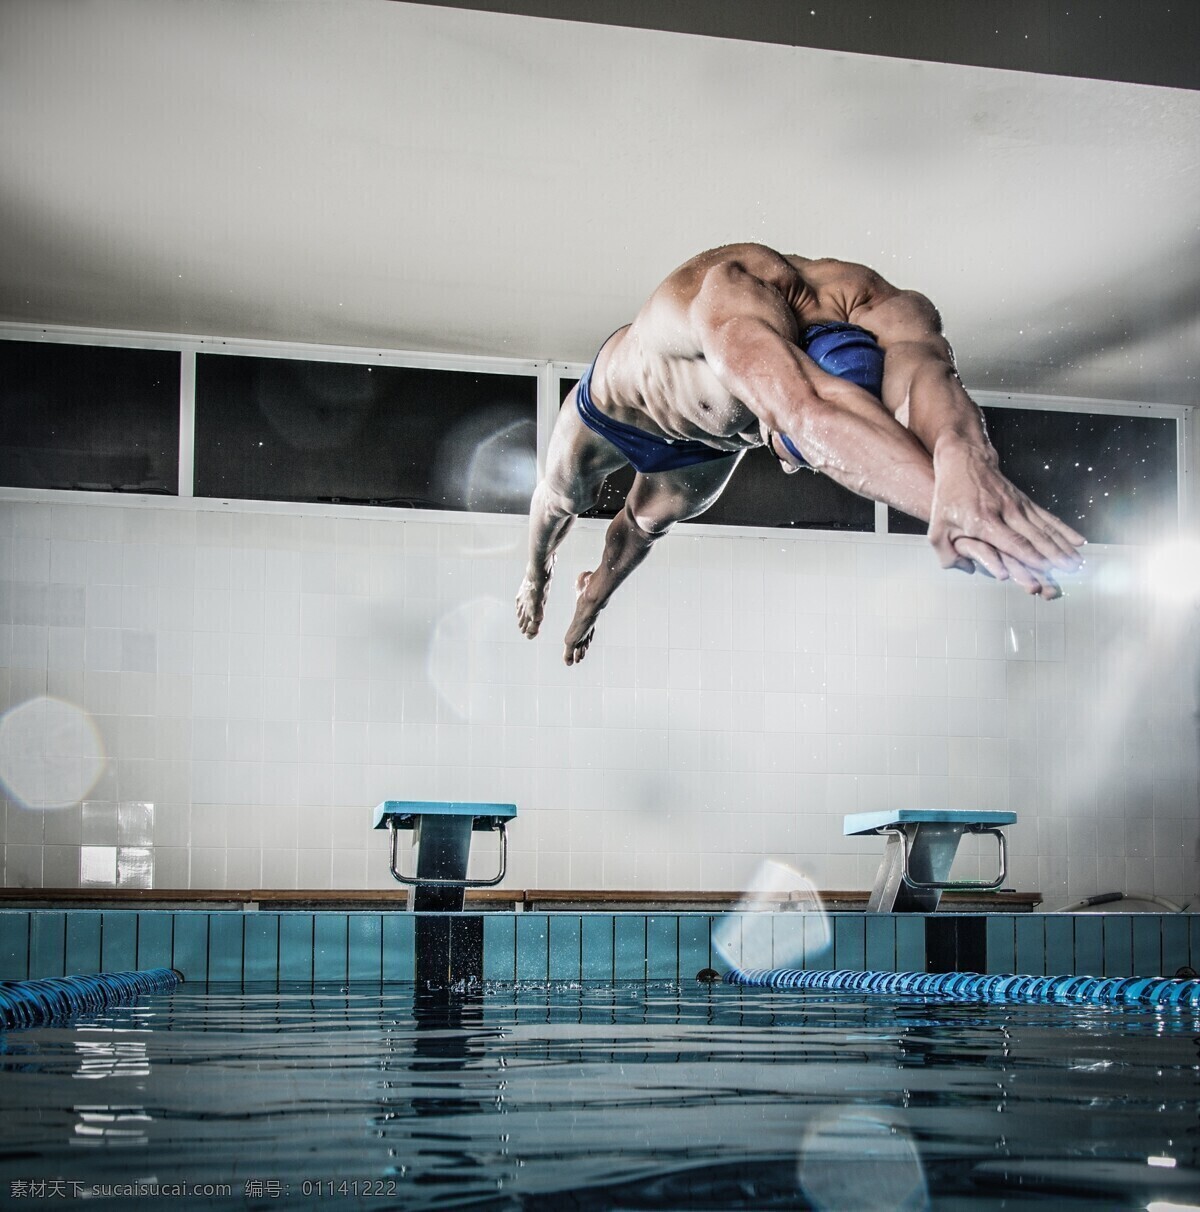 游泳运动员 跳水 体育运动员 锻炼 健身 体育运动 生活百科 灰色